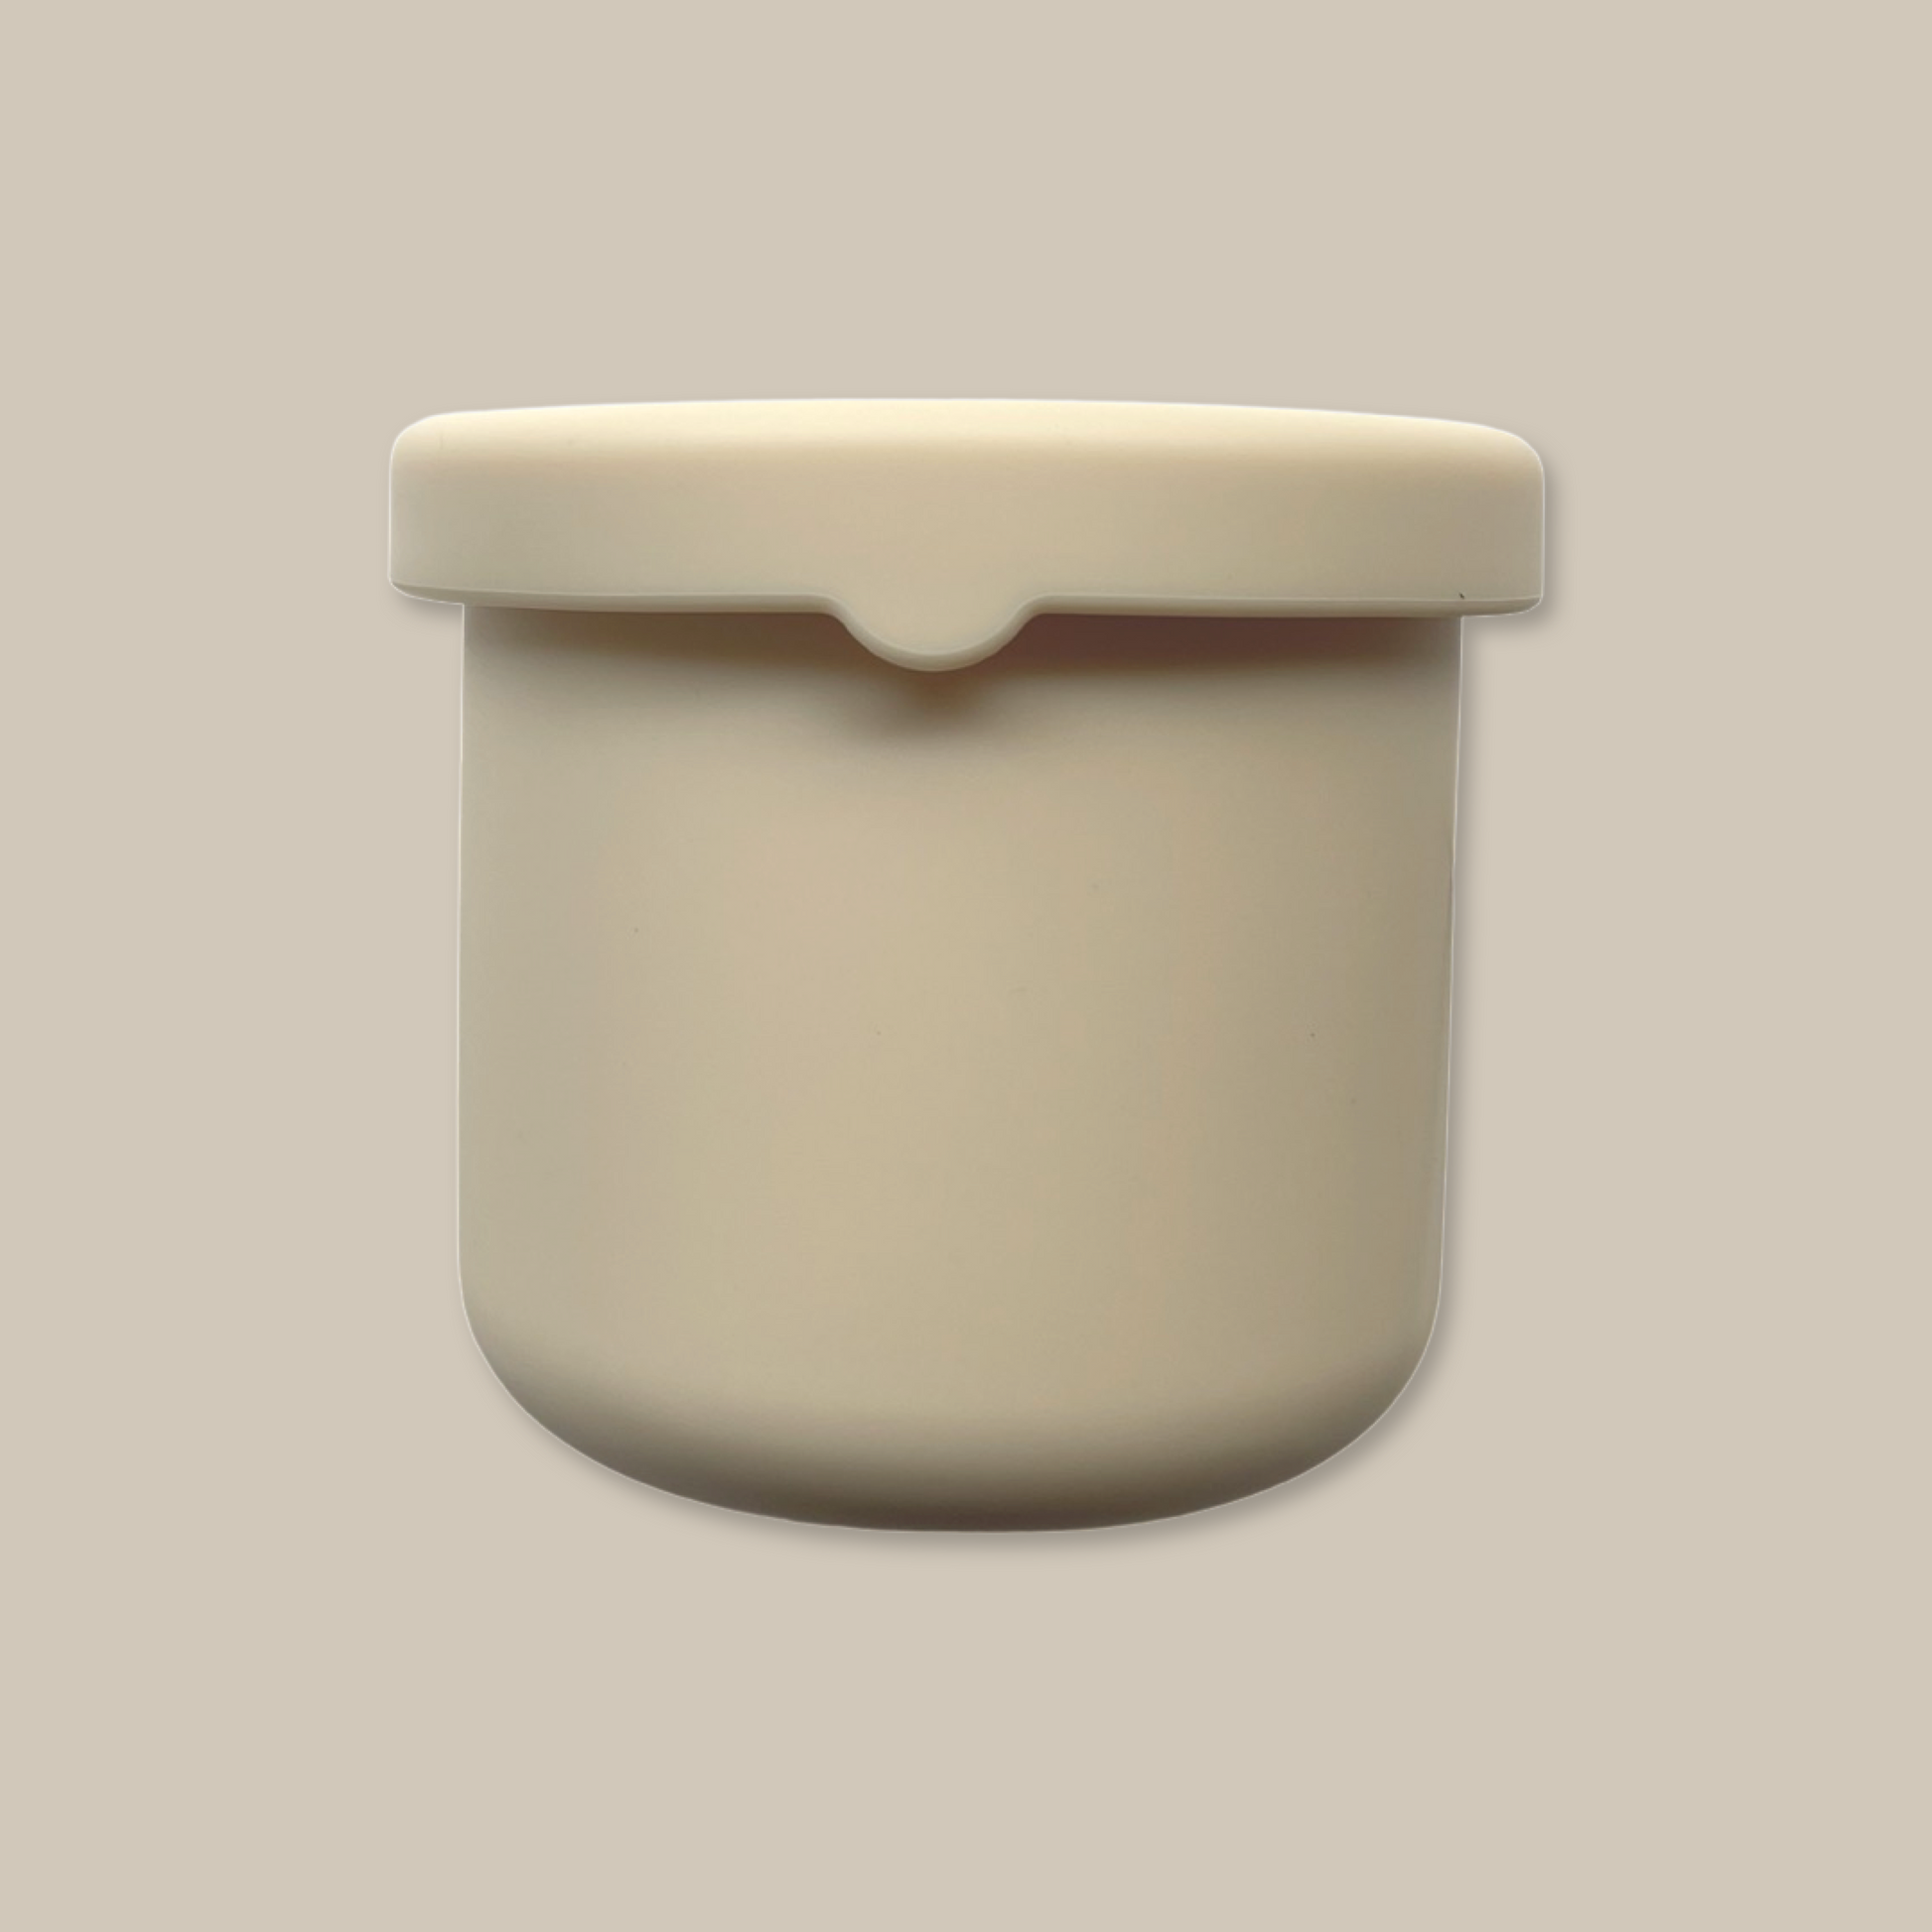 Silicone Snack Container mini minimalists